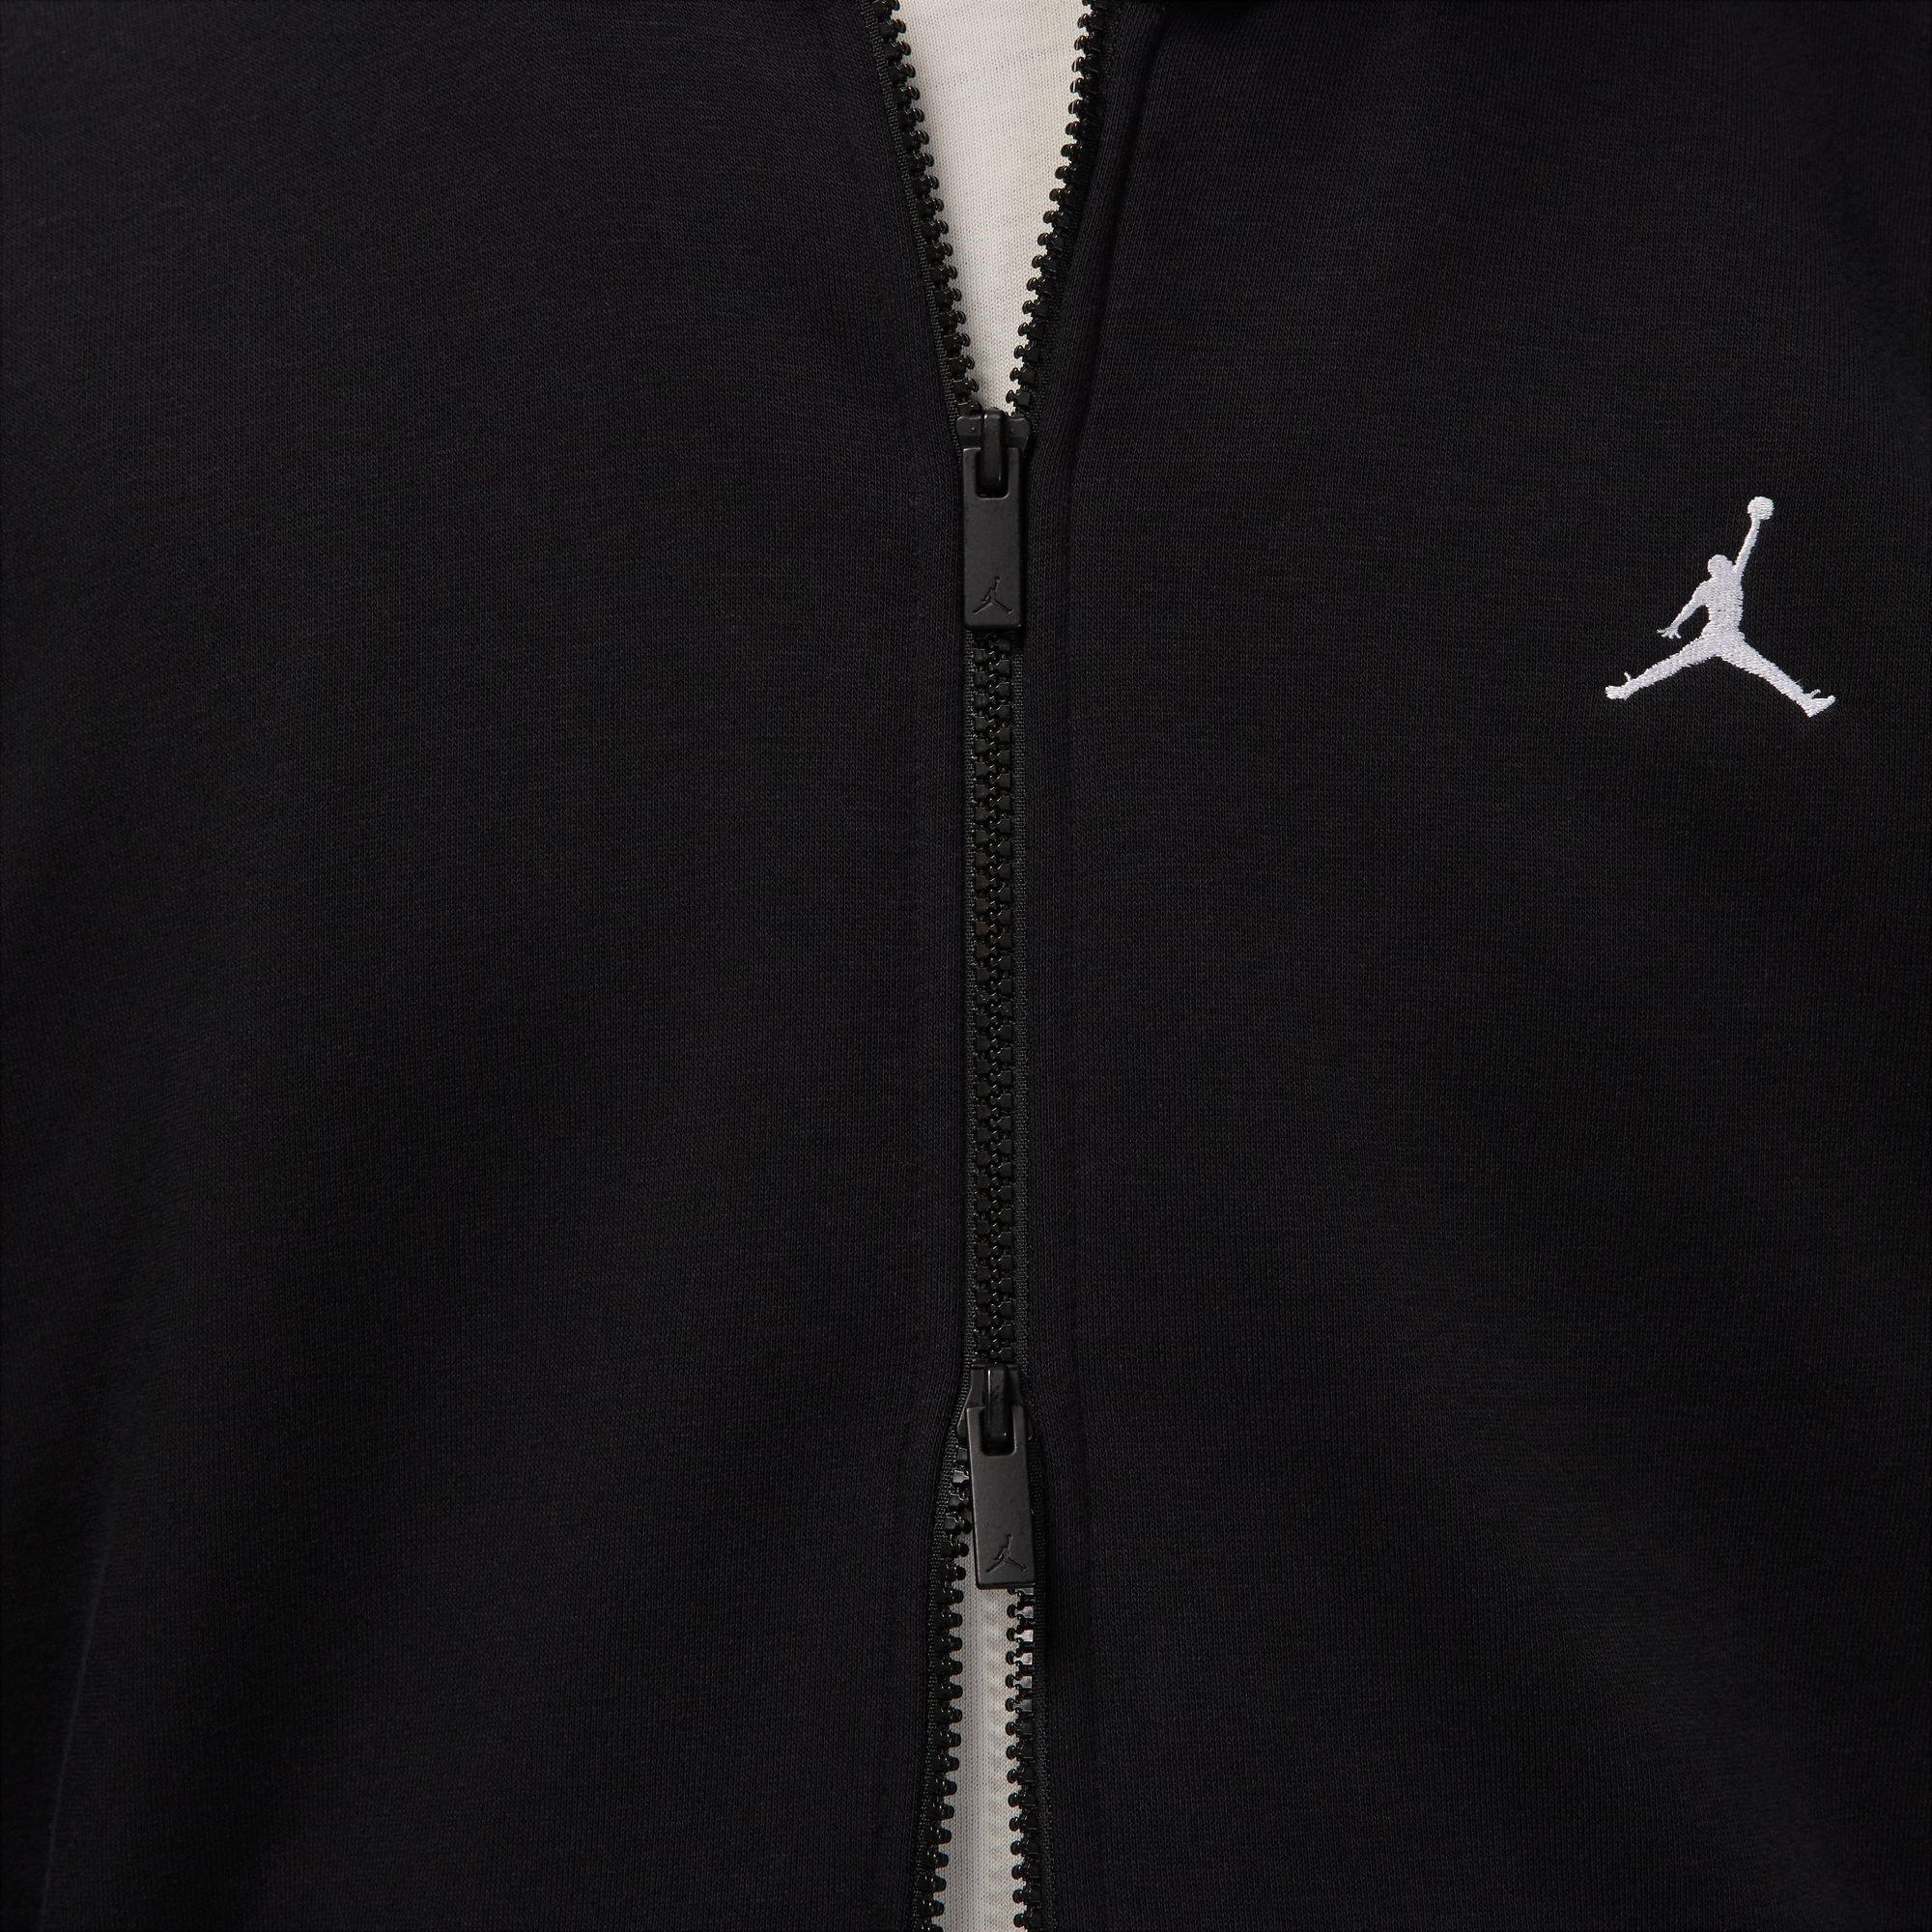 Air Jordan, Essentials Men's Full-Zip Fleece Hoodie, Zip Hoodies